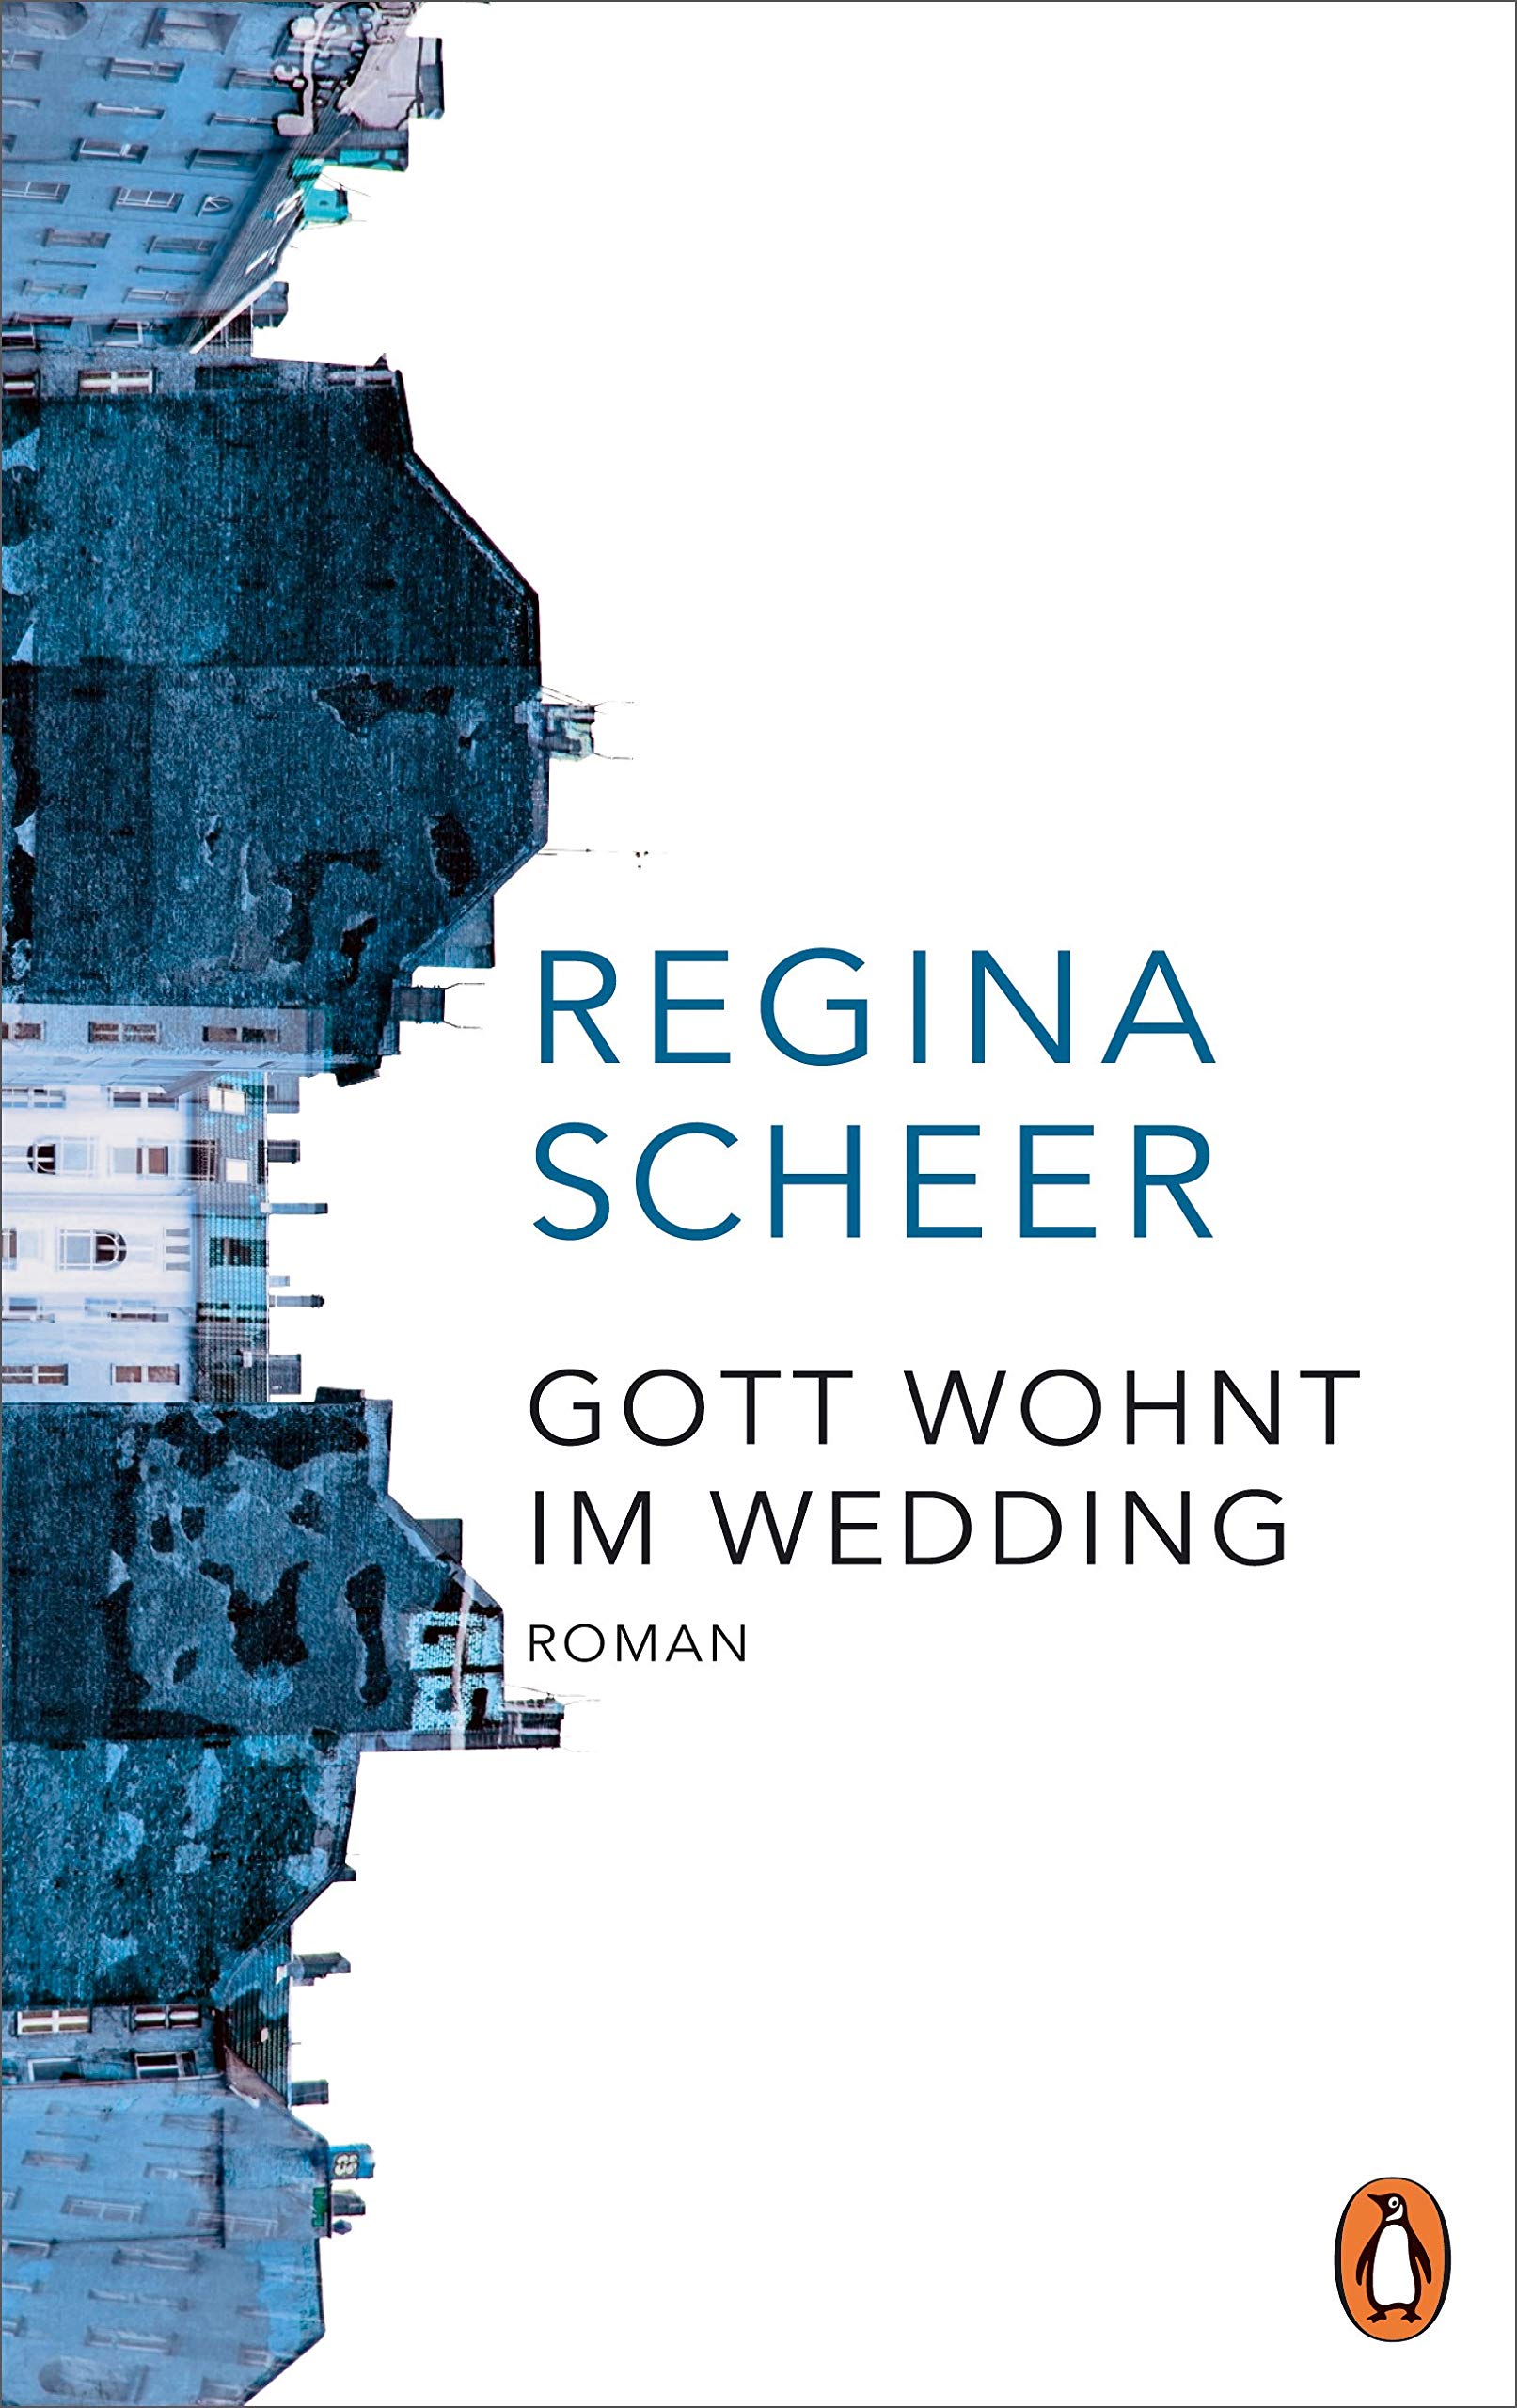 Couverture du roman Gott wohnt im Wedding de Regina Scheer. Façades d'immeubles aux tons bleutés sur fond blanc